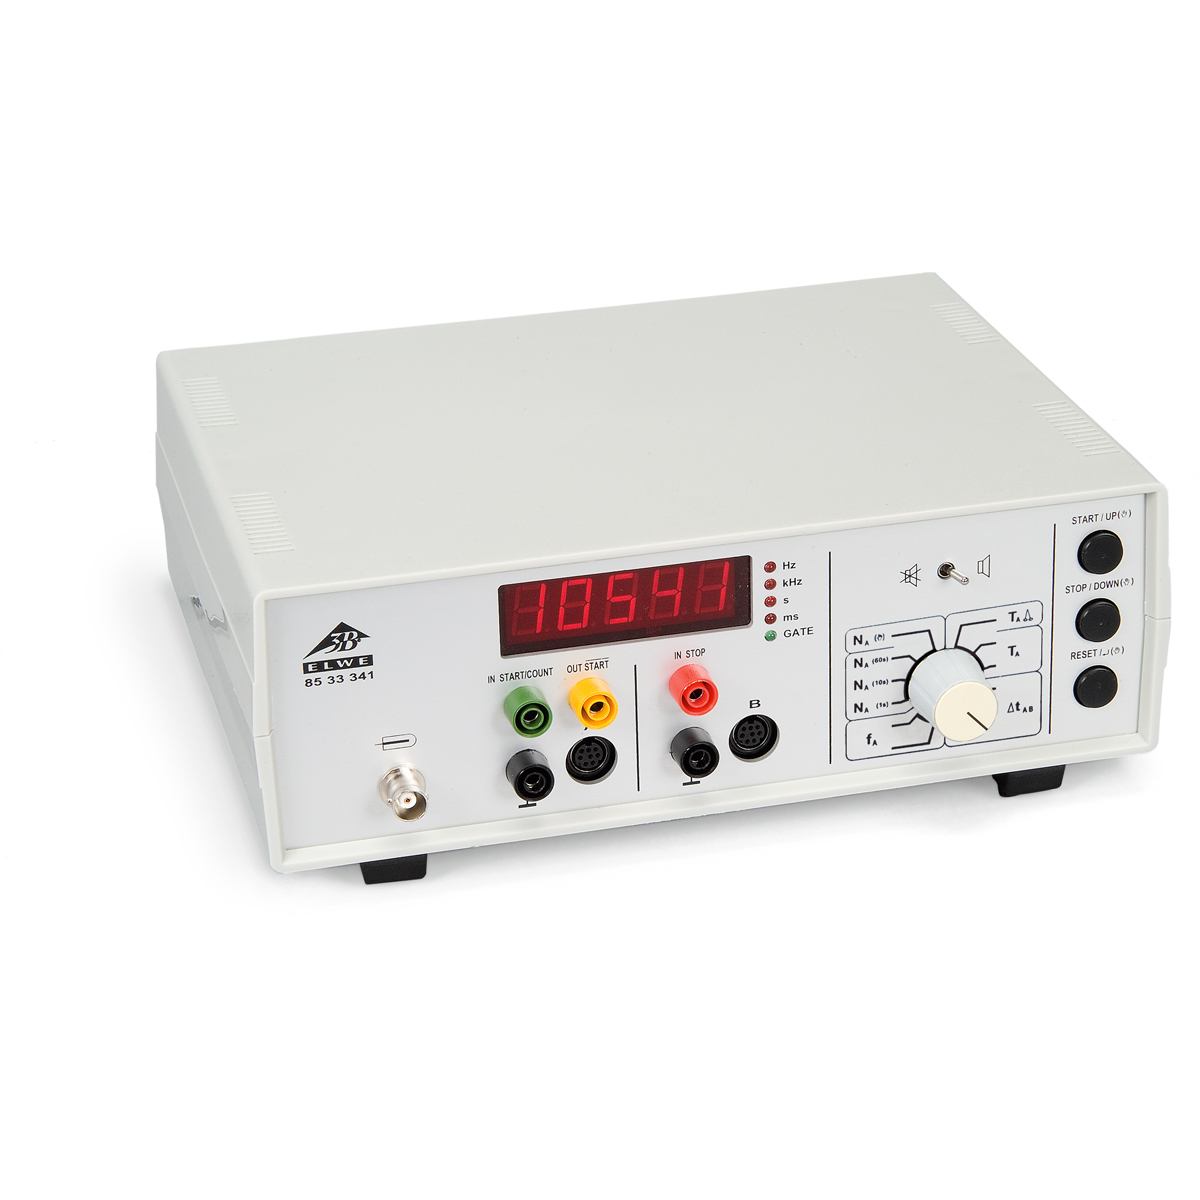 Cronometro digitale - 1002811 - Hanhart - U11902 - Misurazione di tempo -  3B Scientific